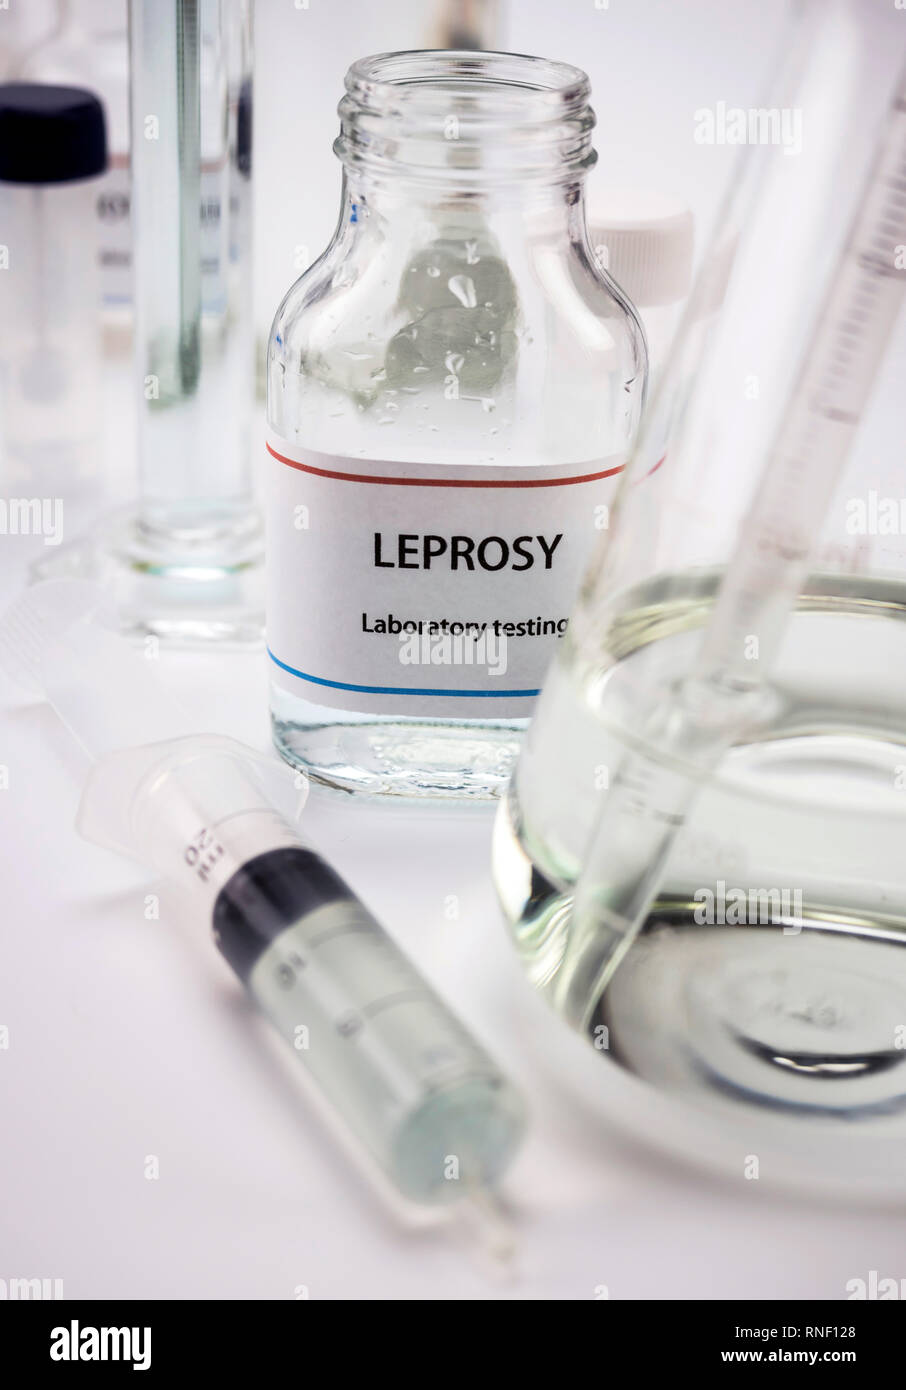 Test Lepra in Labor, konzeptionelle Bild, vertikale Zusammensetzung Stockfoto